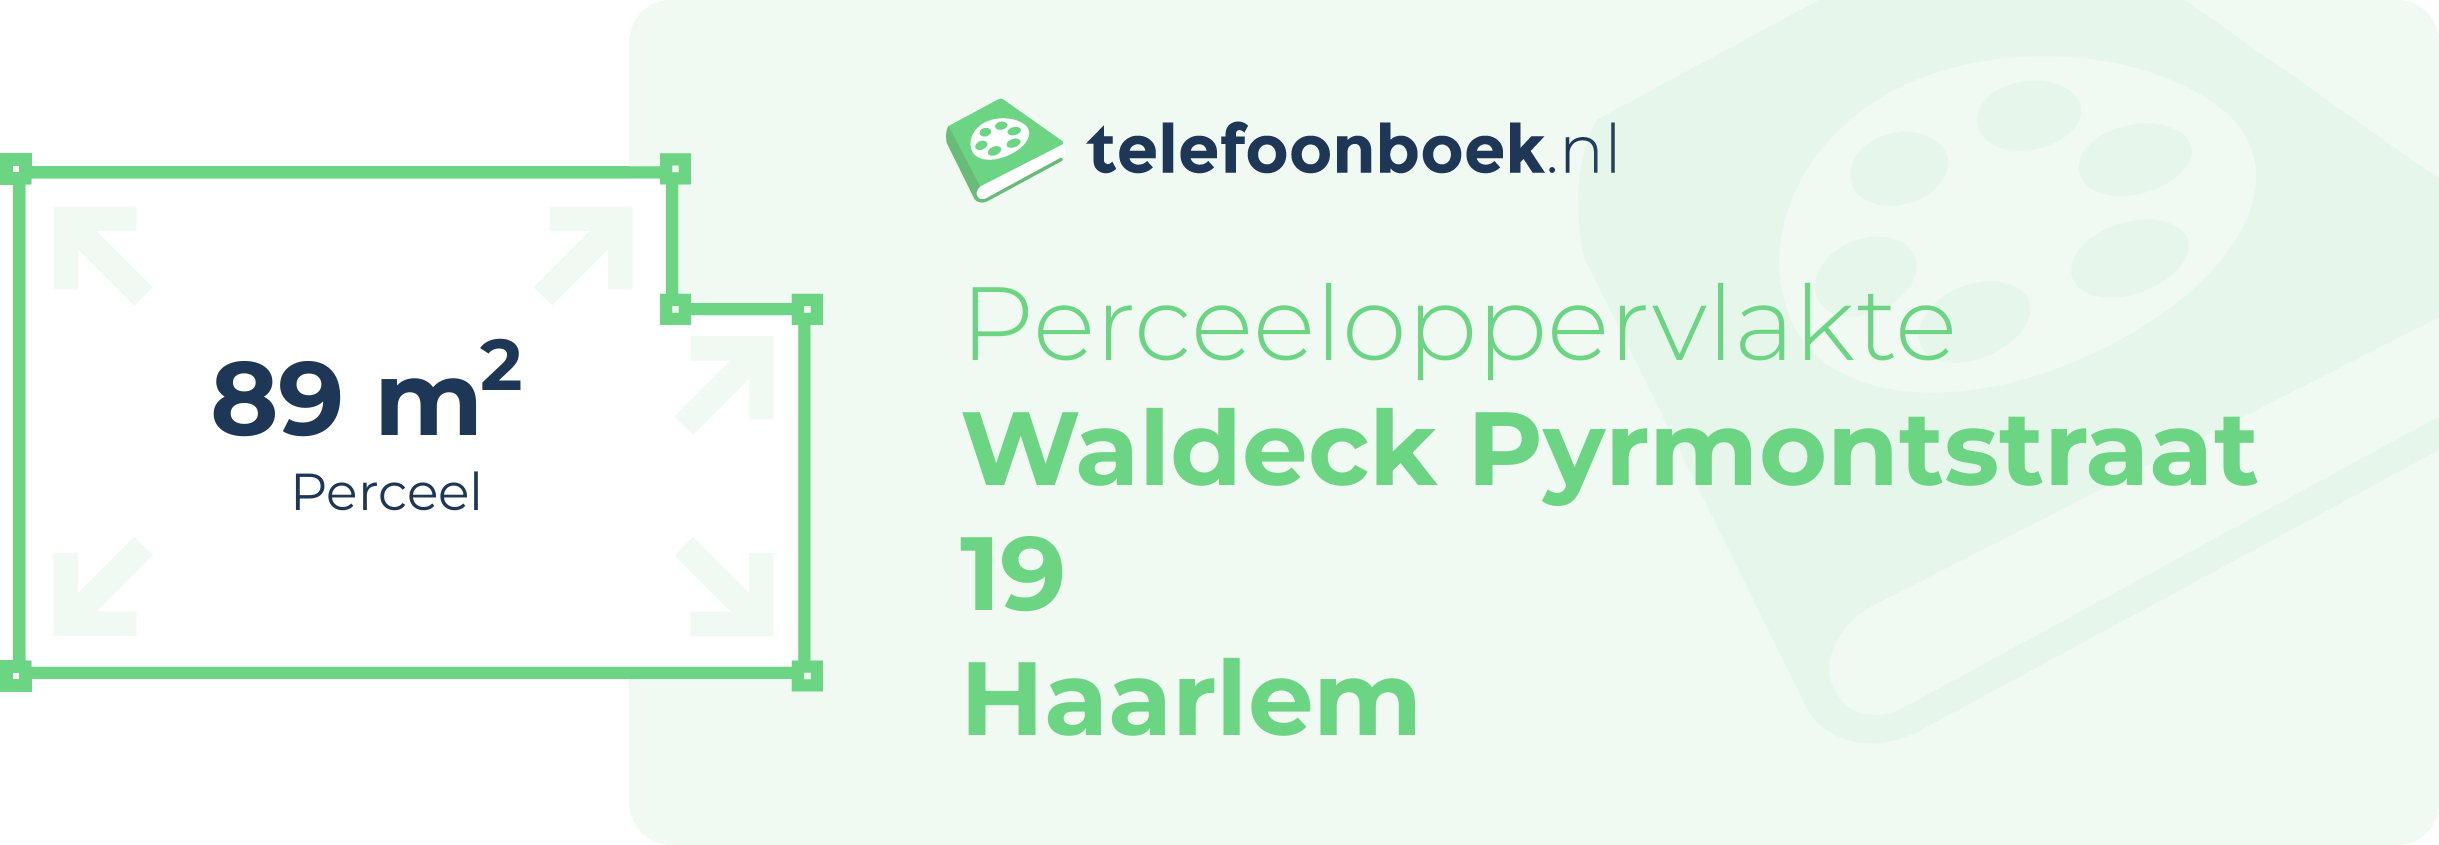 Perceeloppervlakte Waldeck Pyrmontstraat 19 Haarlem